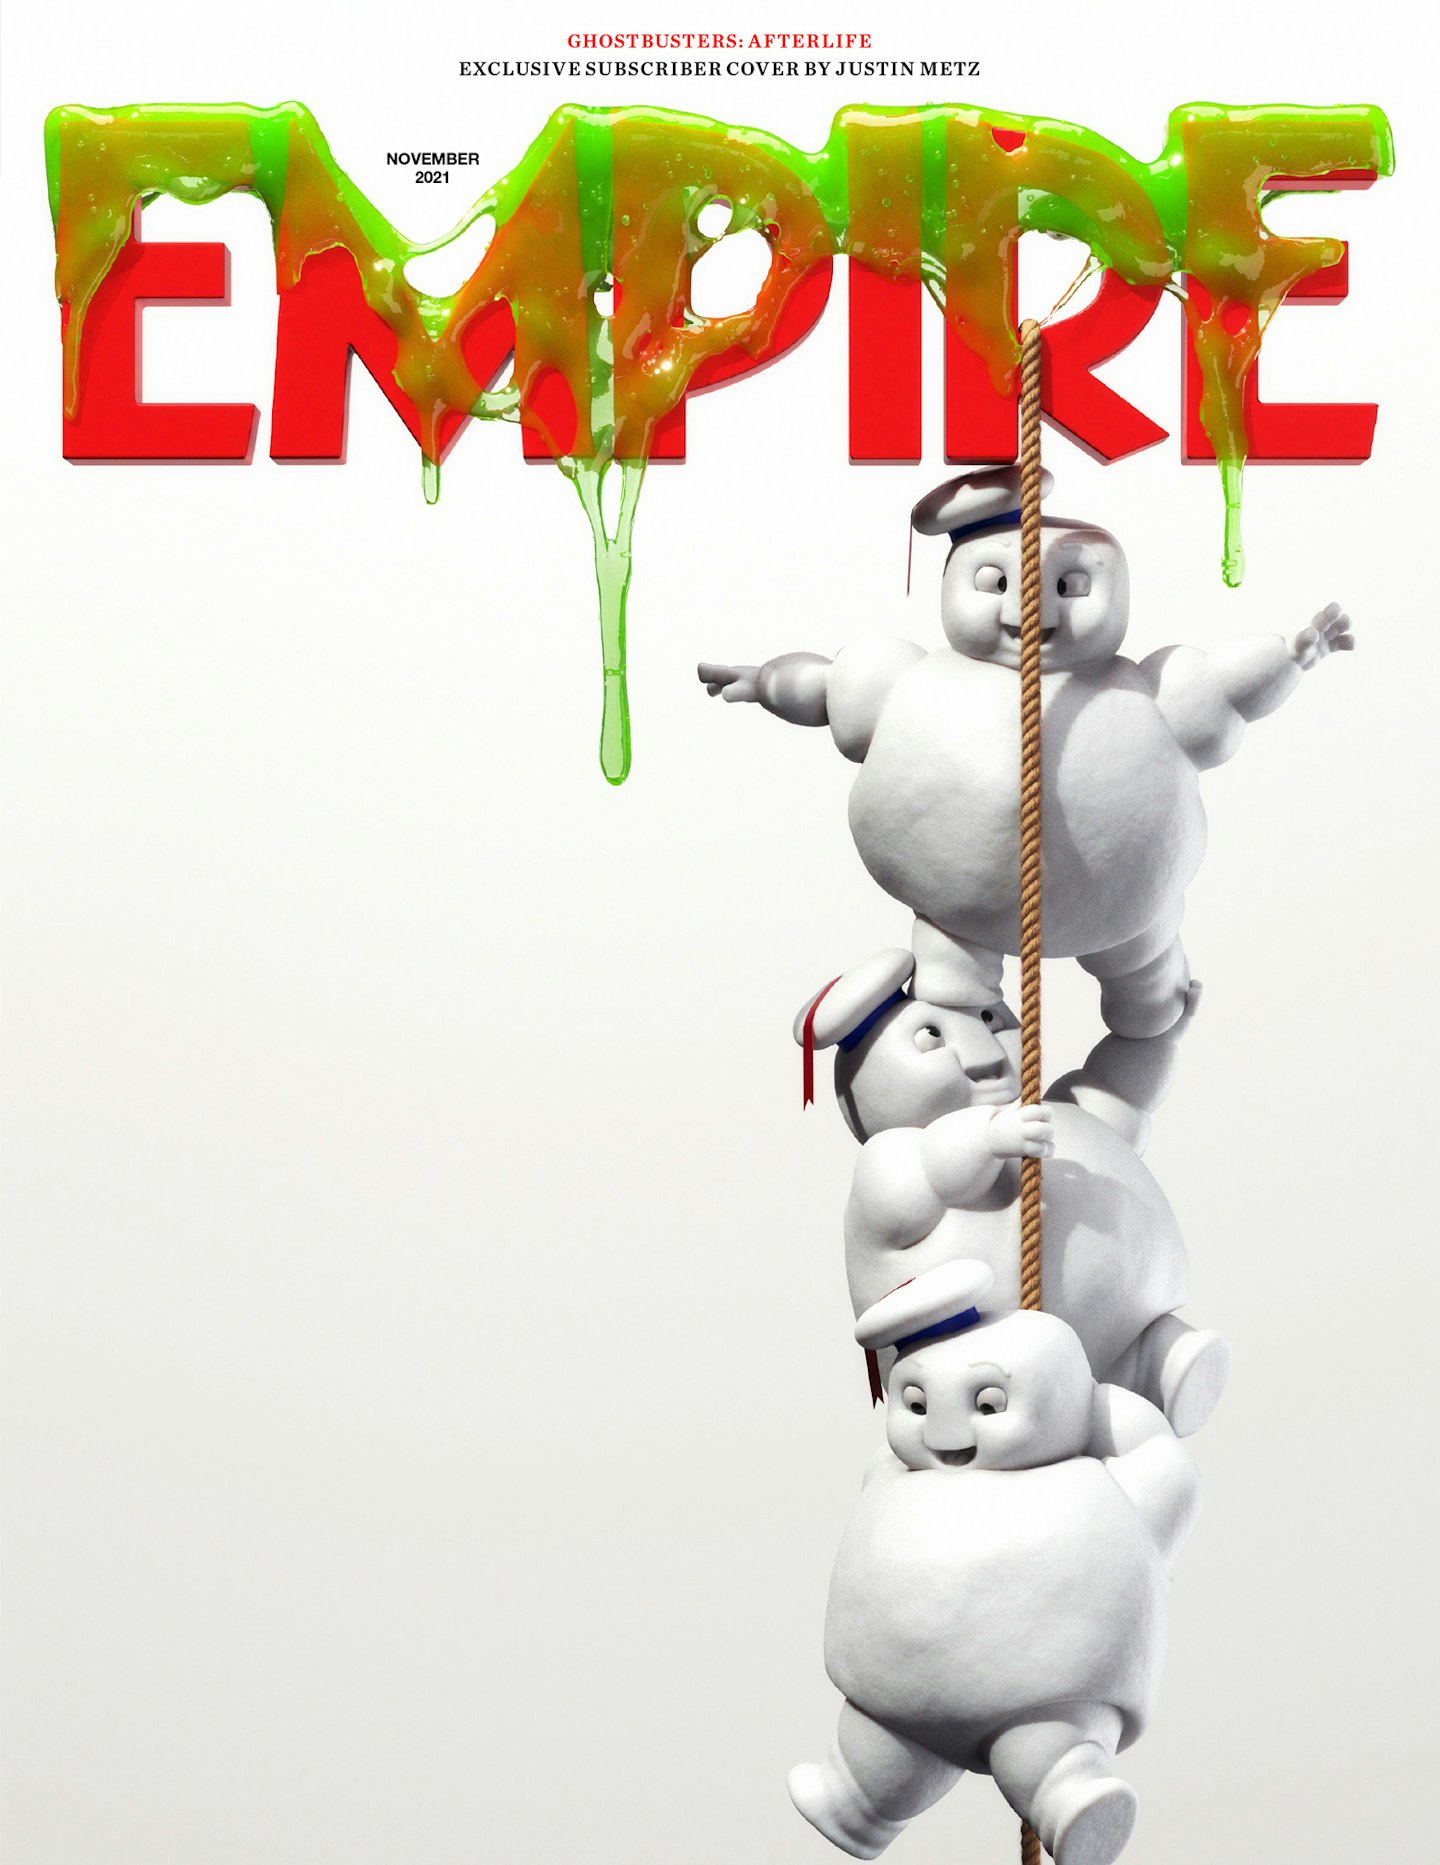 Empire – November 2021 subscriber cover